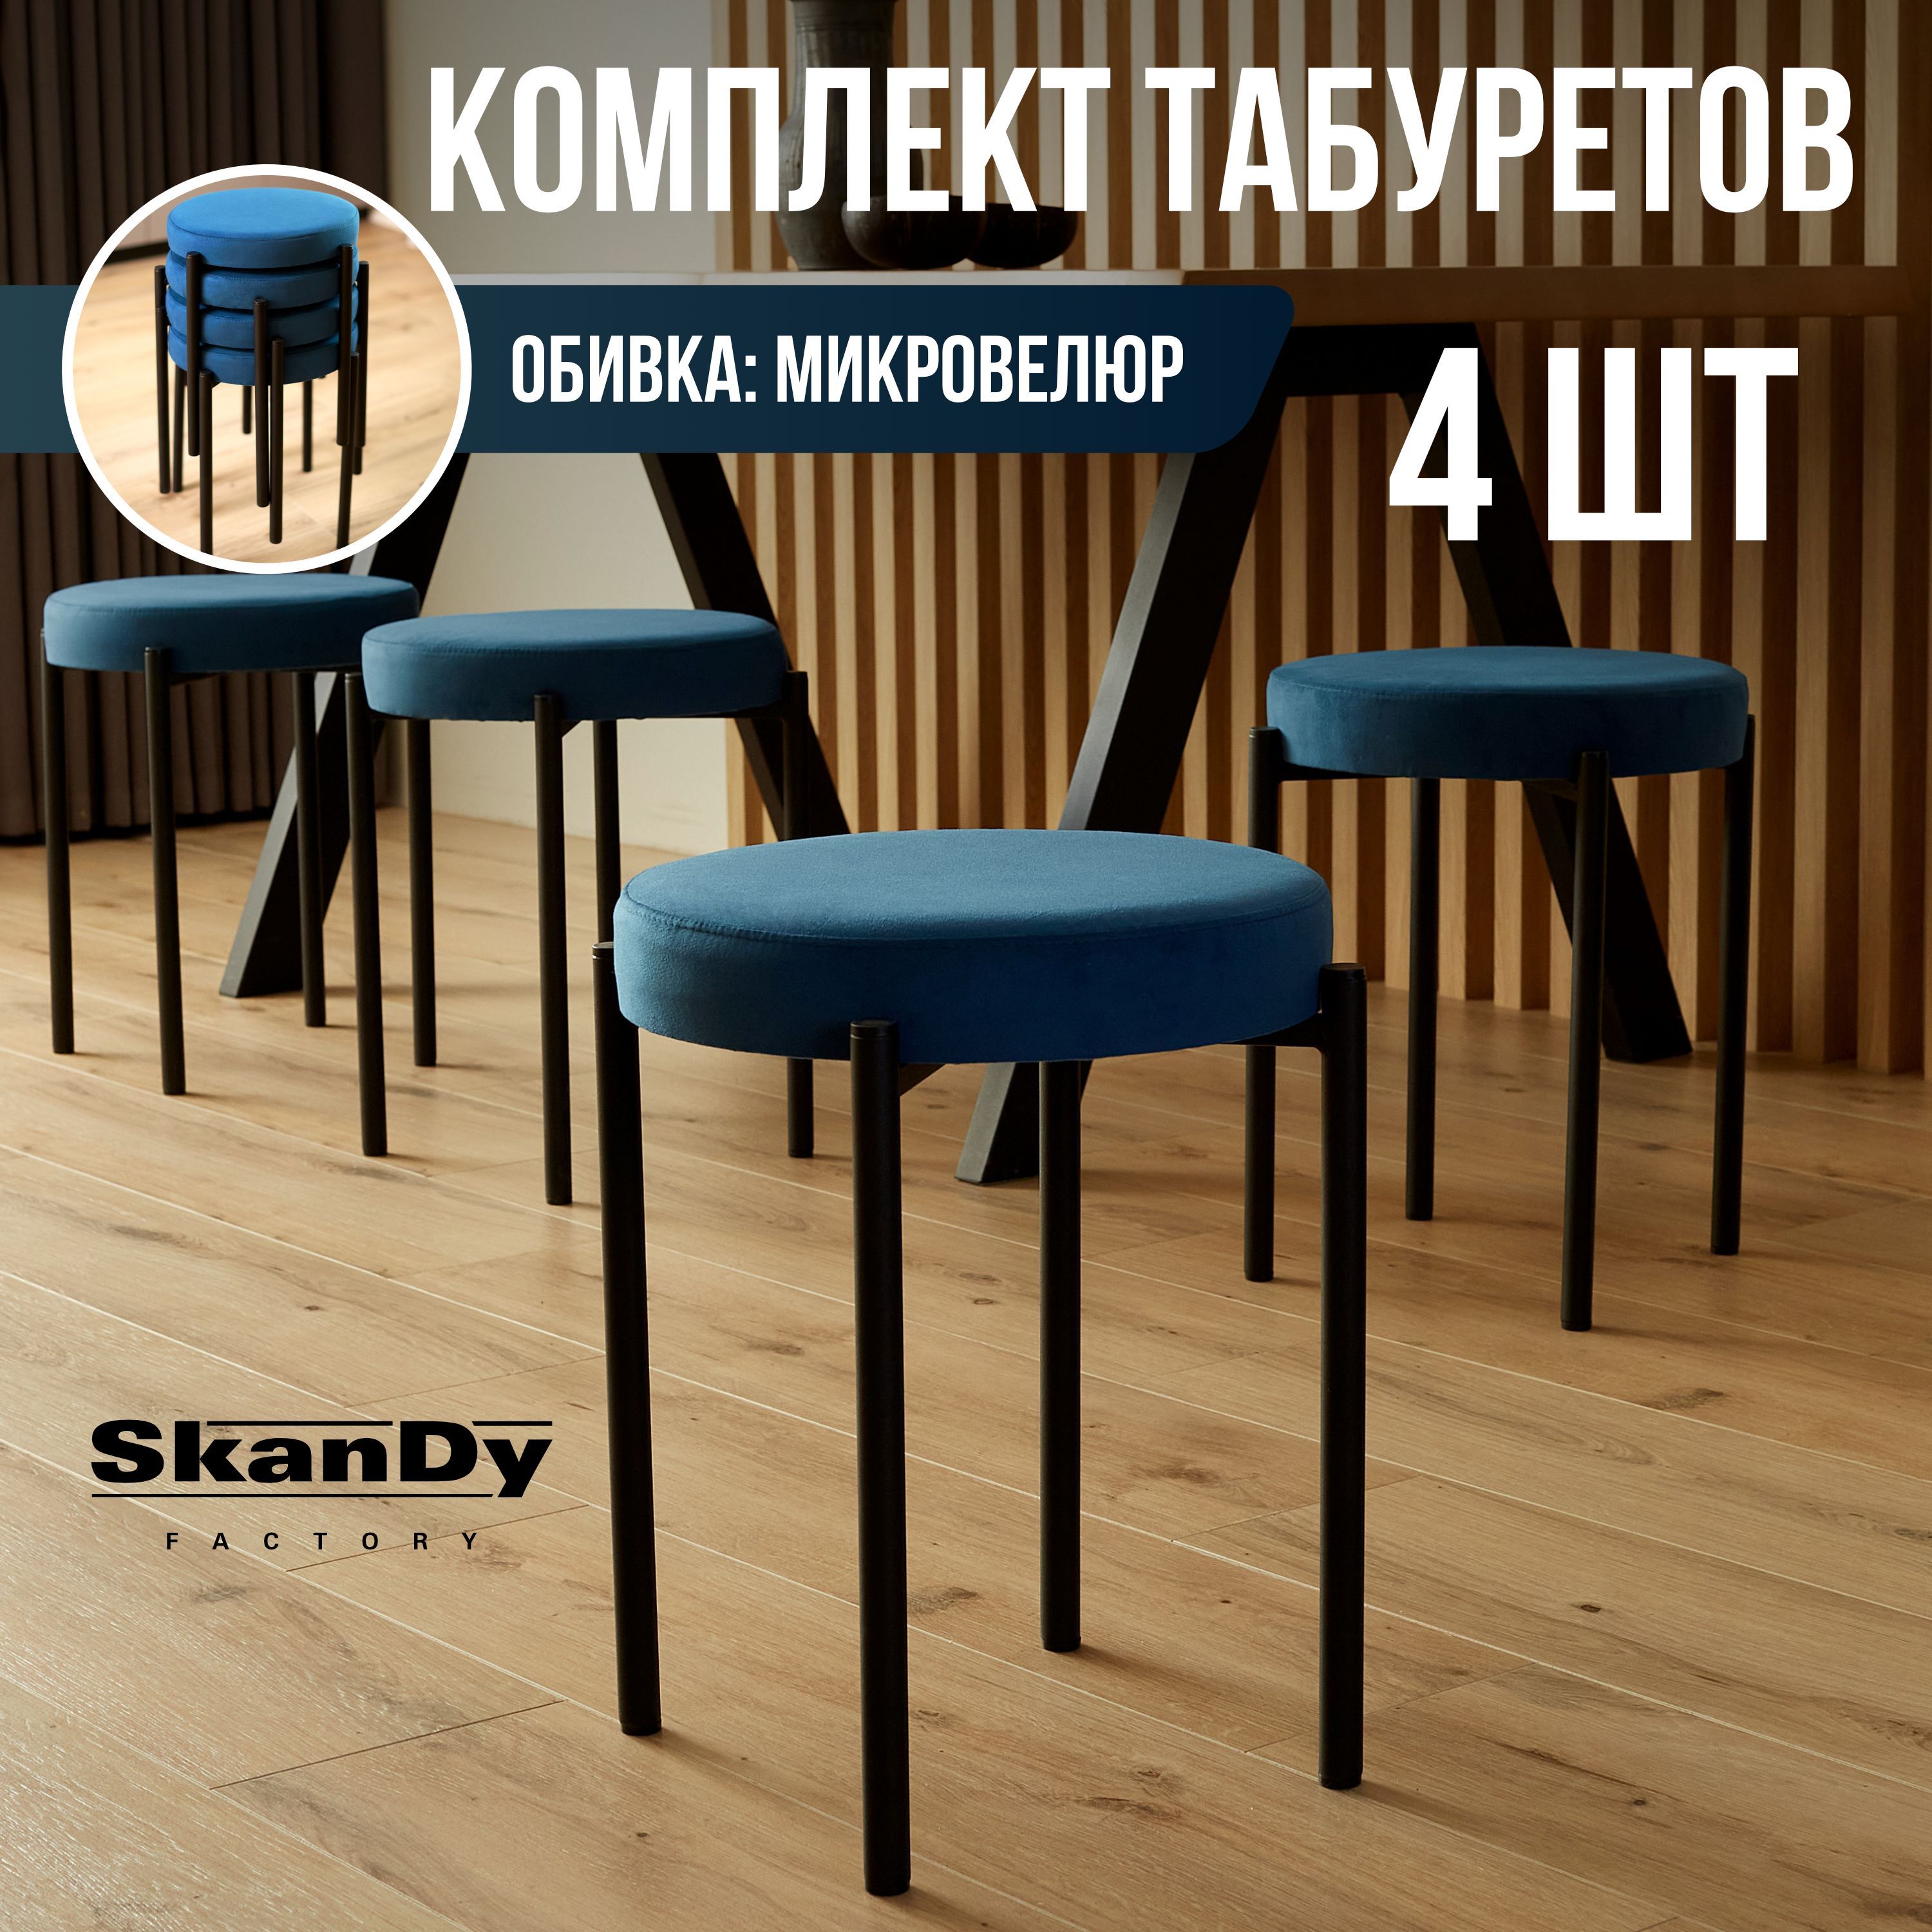 Мягкий табурет для кухни SkanDy Factory 4 шт, синий/черный